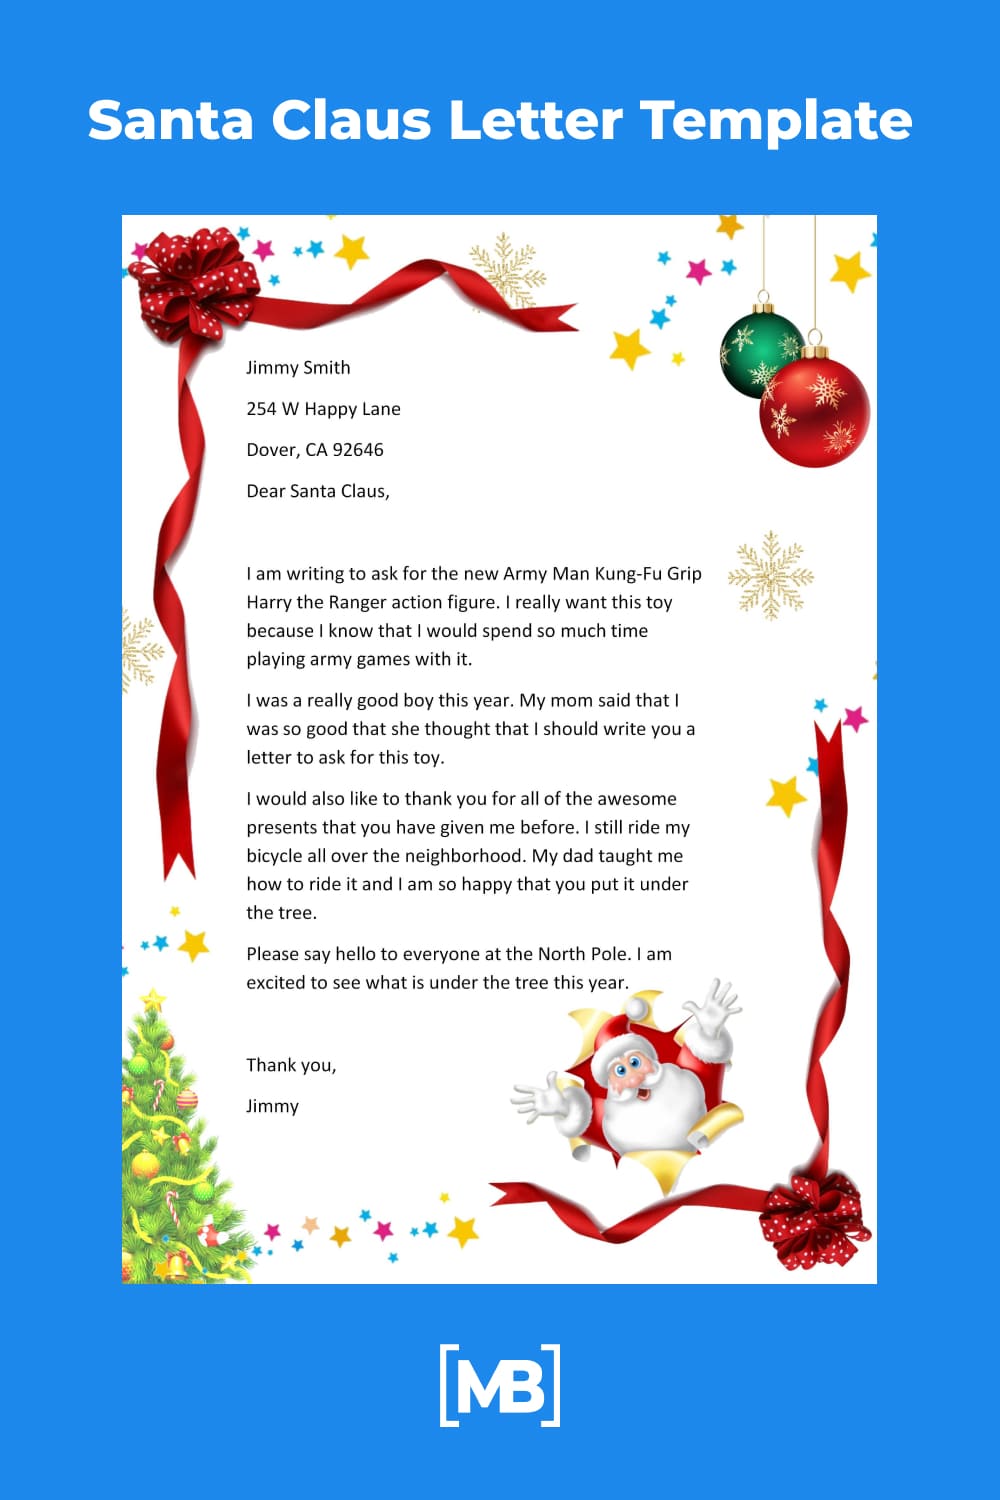 Celebrated letter to Santa.